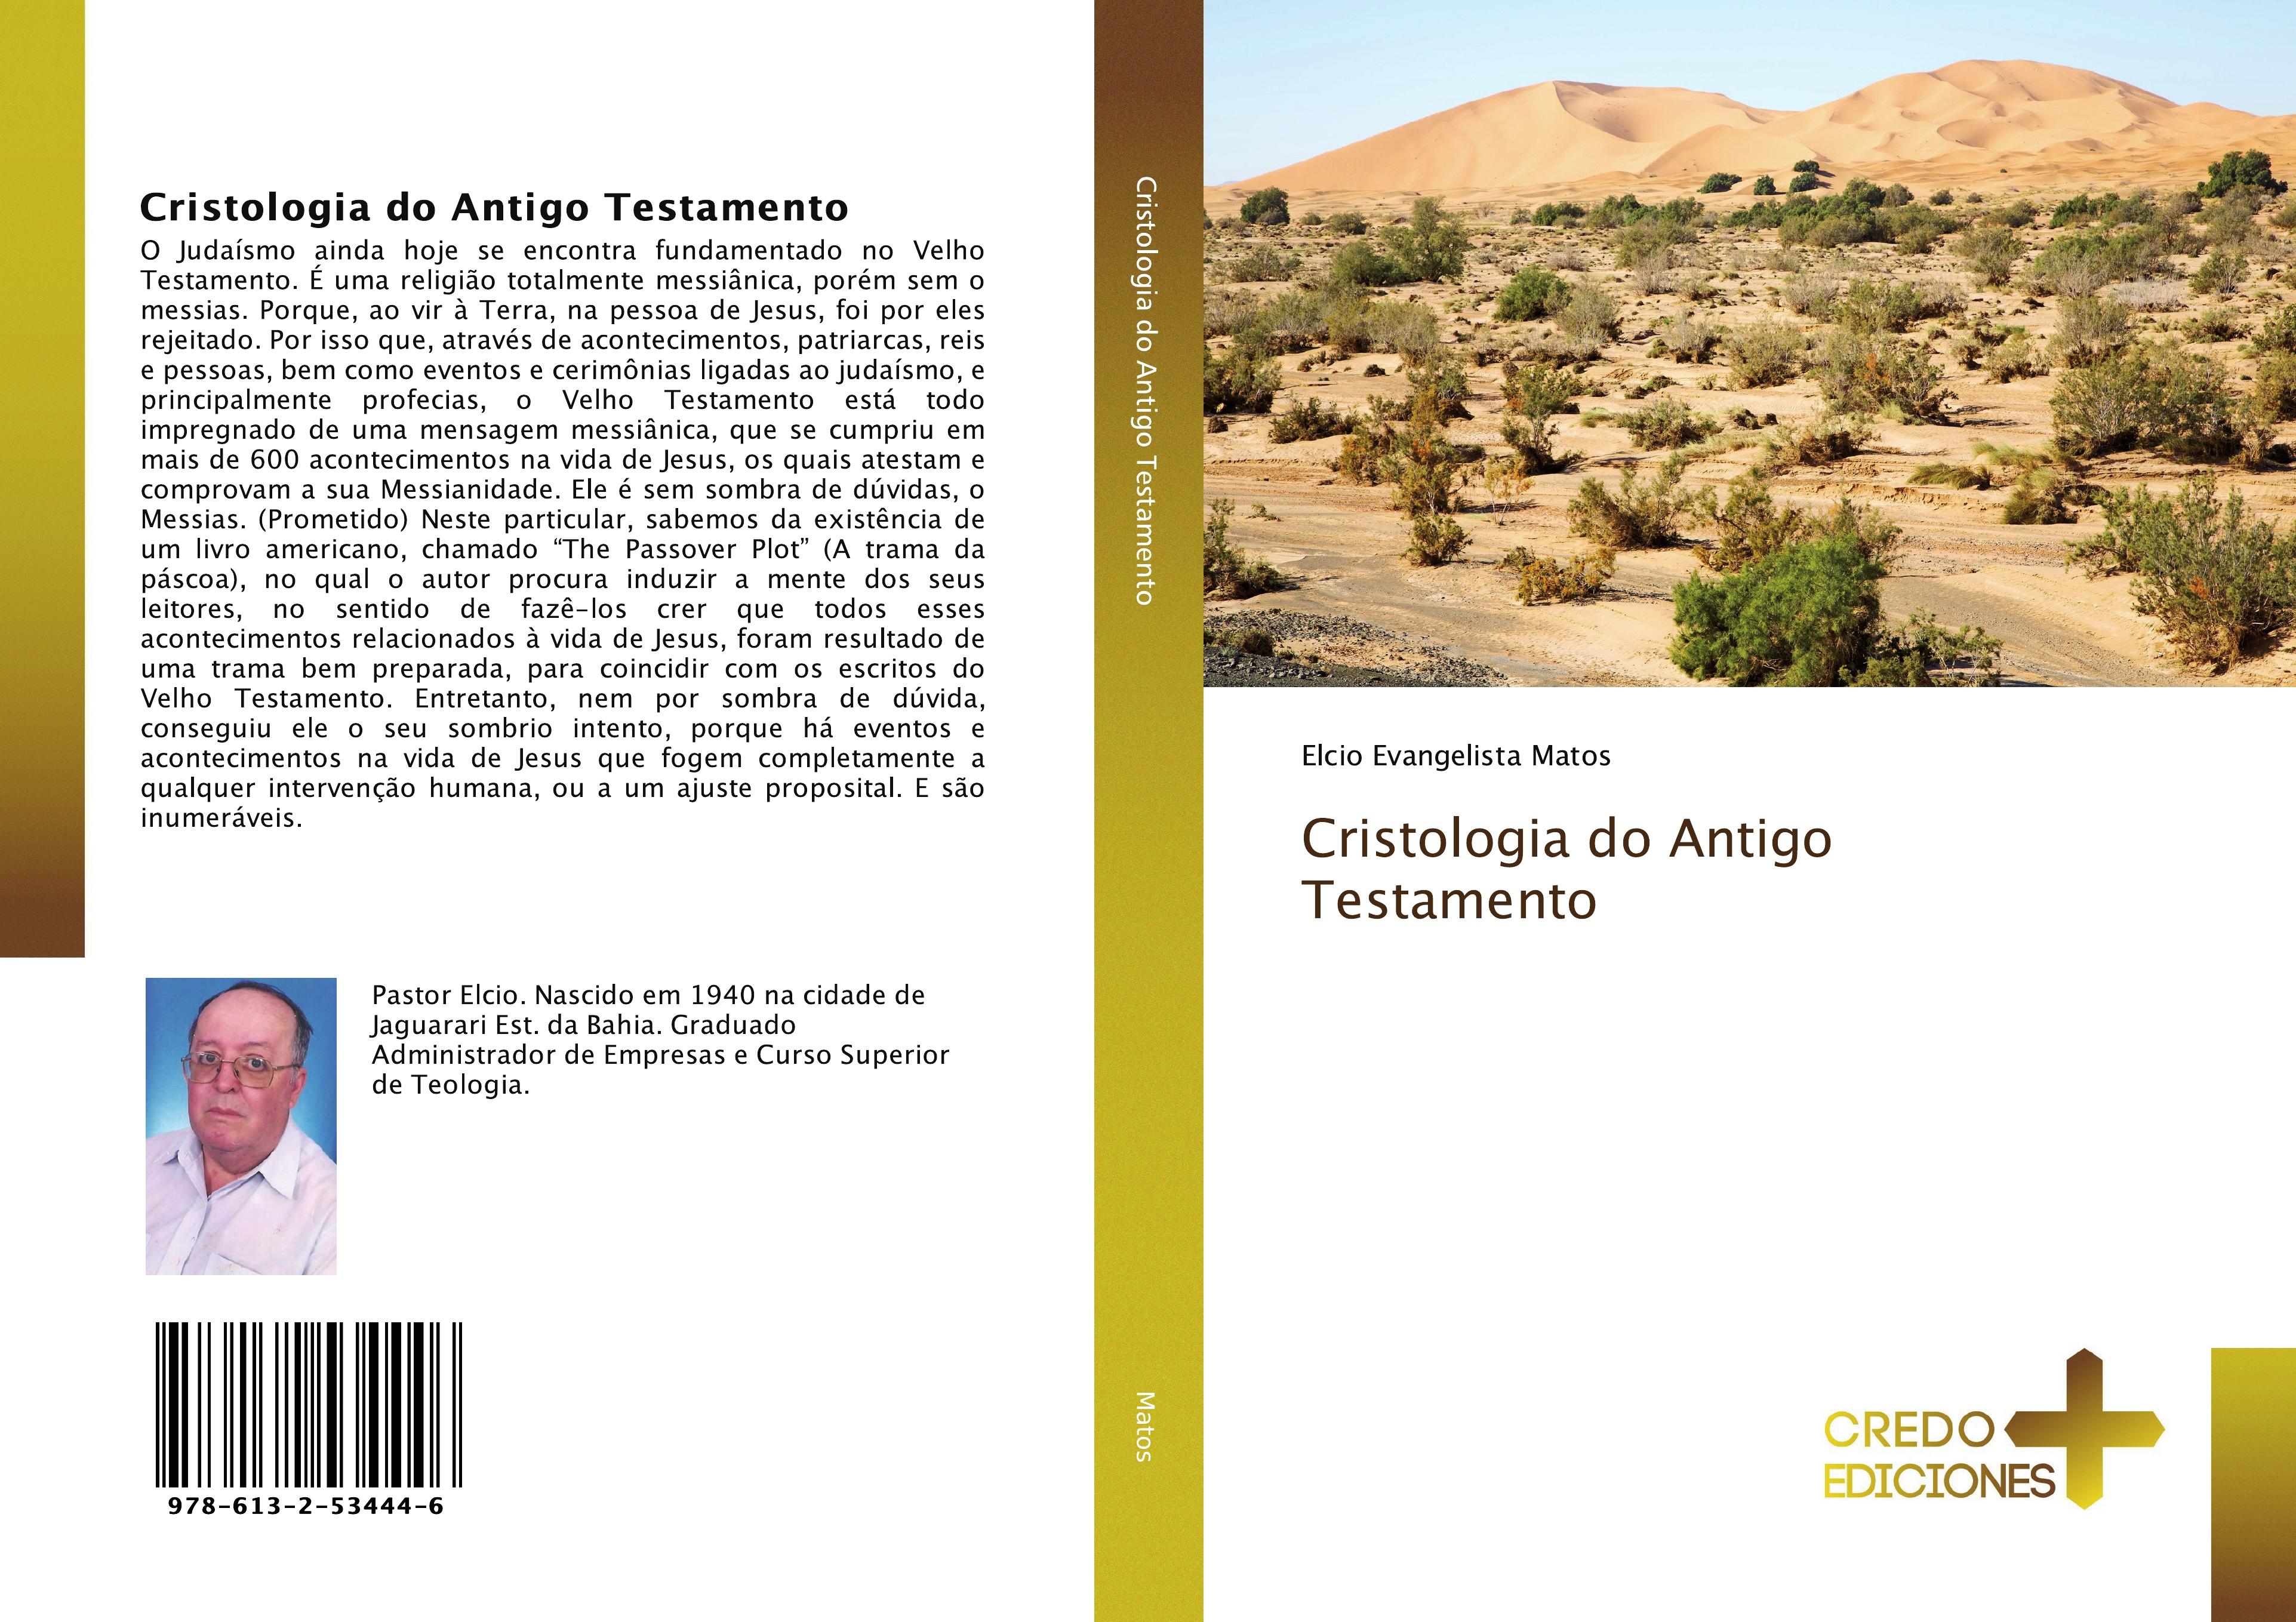 Cristologia do Antigo Testamento - Elcio Evangelista Matos